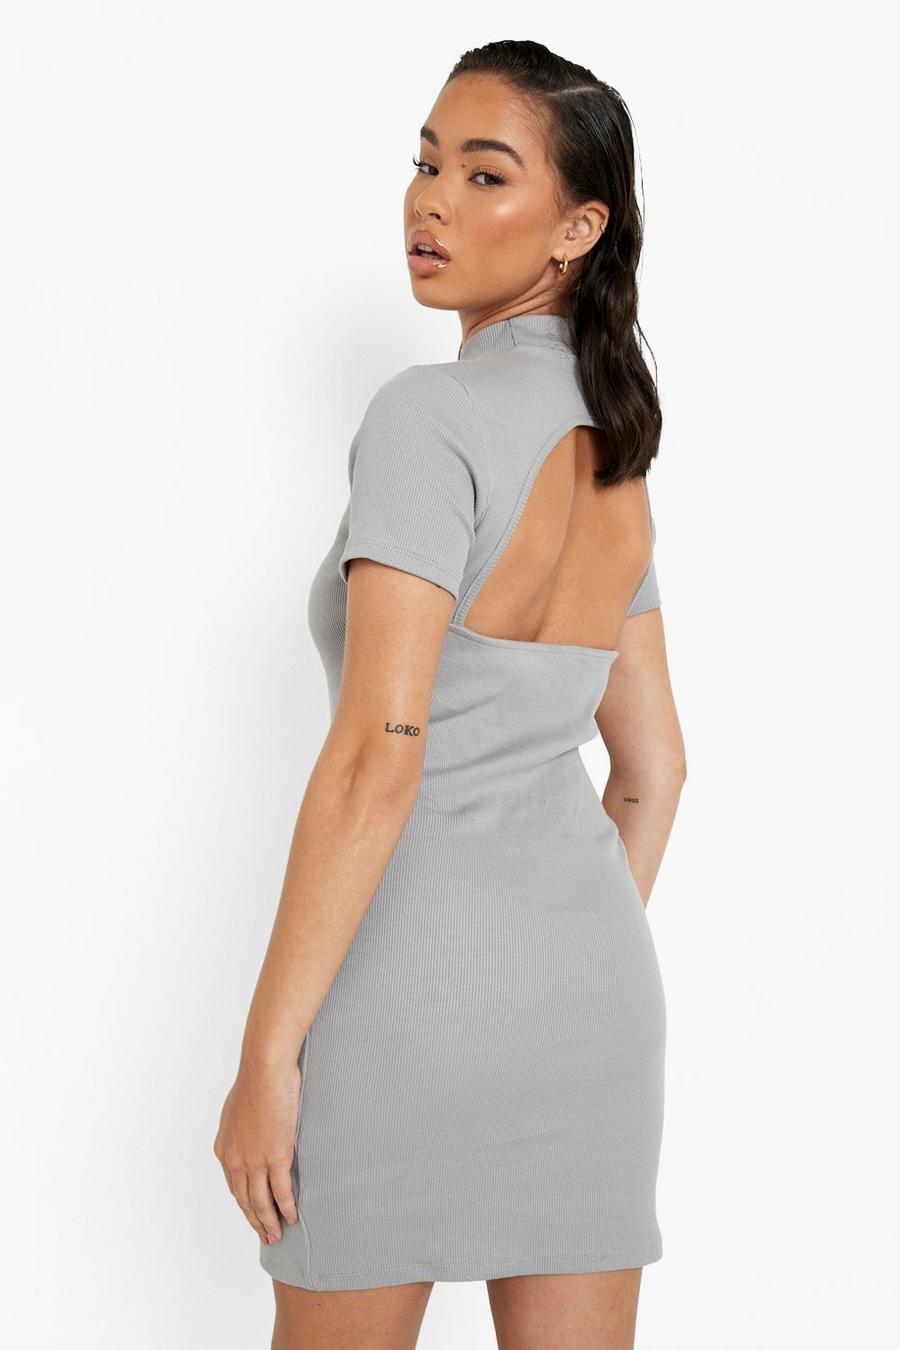 אפור grey שמלת מיני פרימיום באריגת ריב עבה עם פתחים בגב